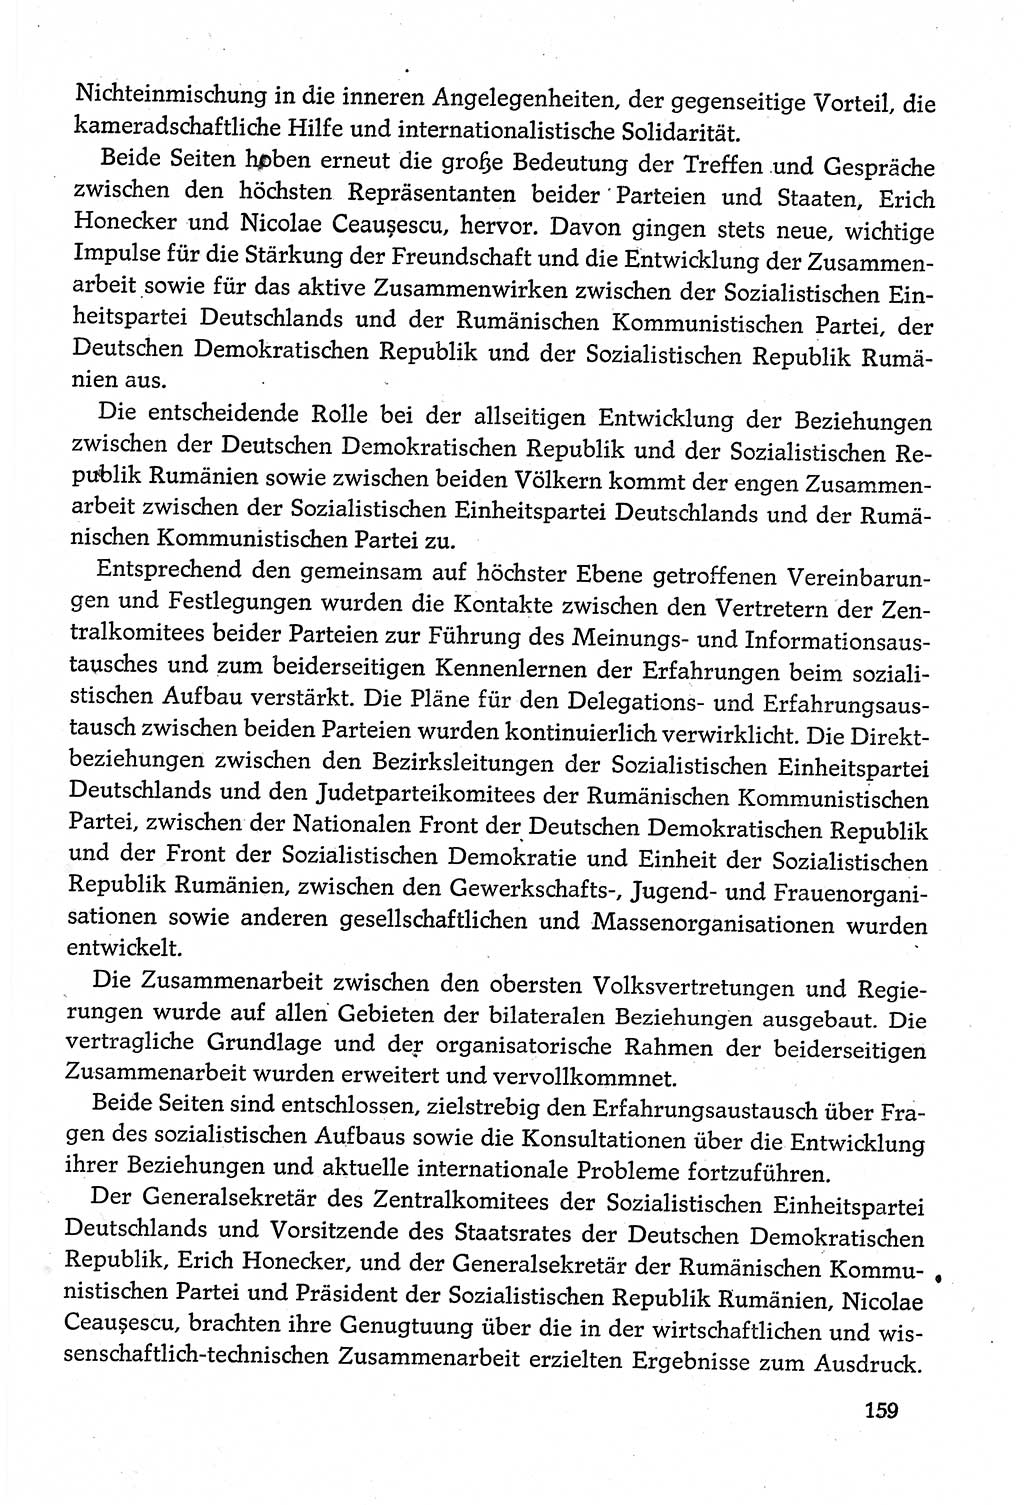 Dokumente der Sozialistischen Einheitspartei Deutschlands (SED) [Deutsche Demokratische Republik (DDR)] 1980-1981, Seite 159 (Dok. SED DDR 1980-1981, S. 159)